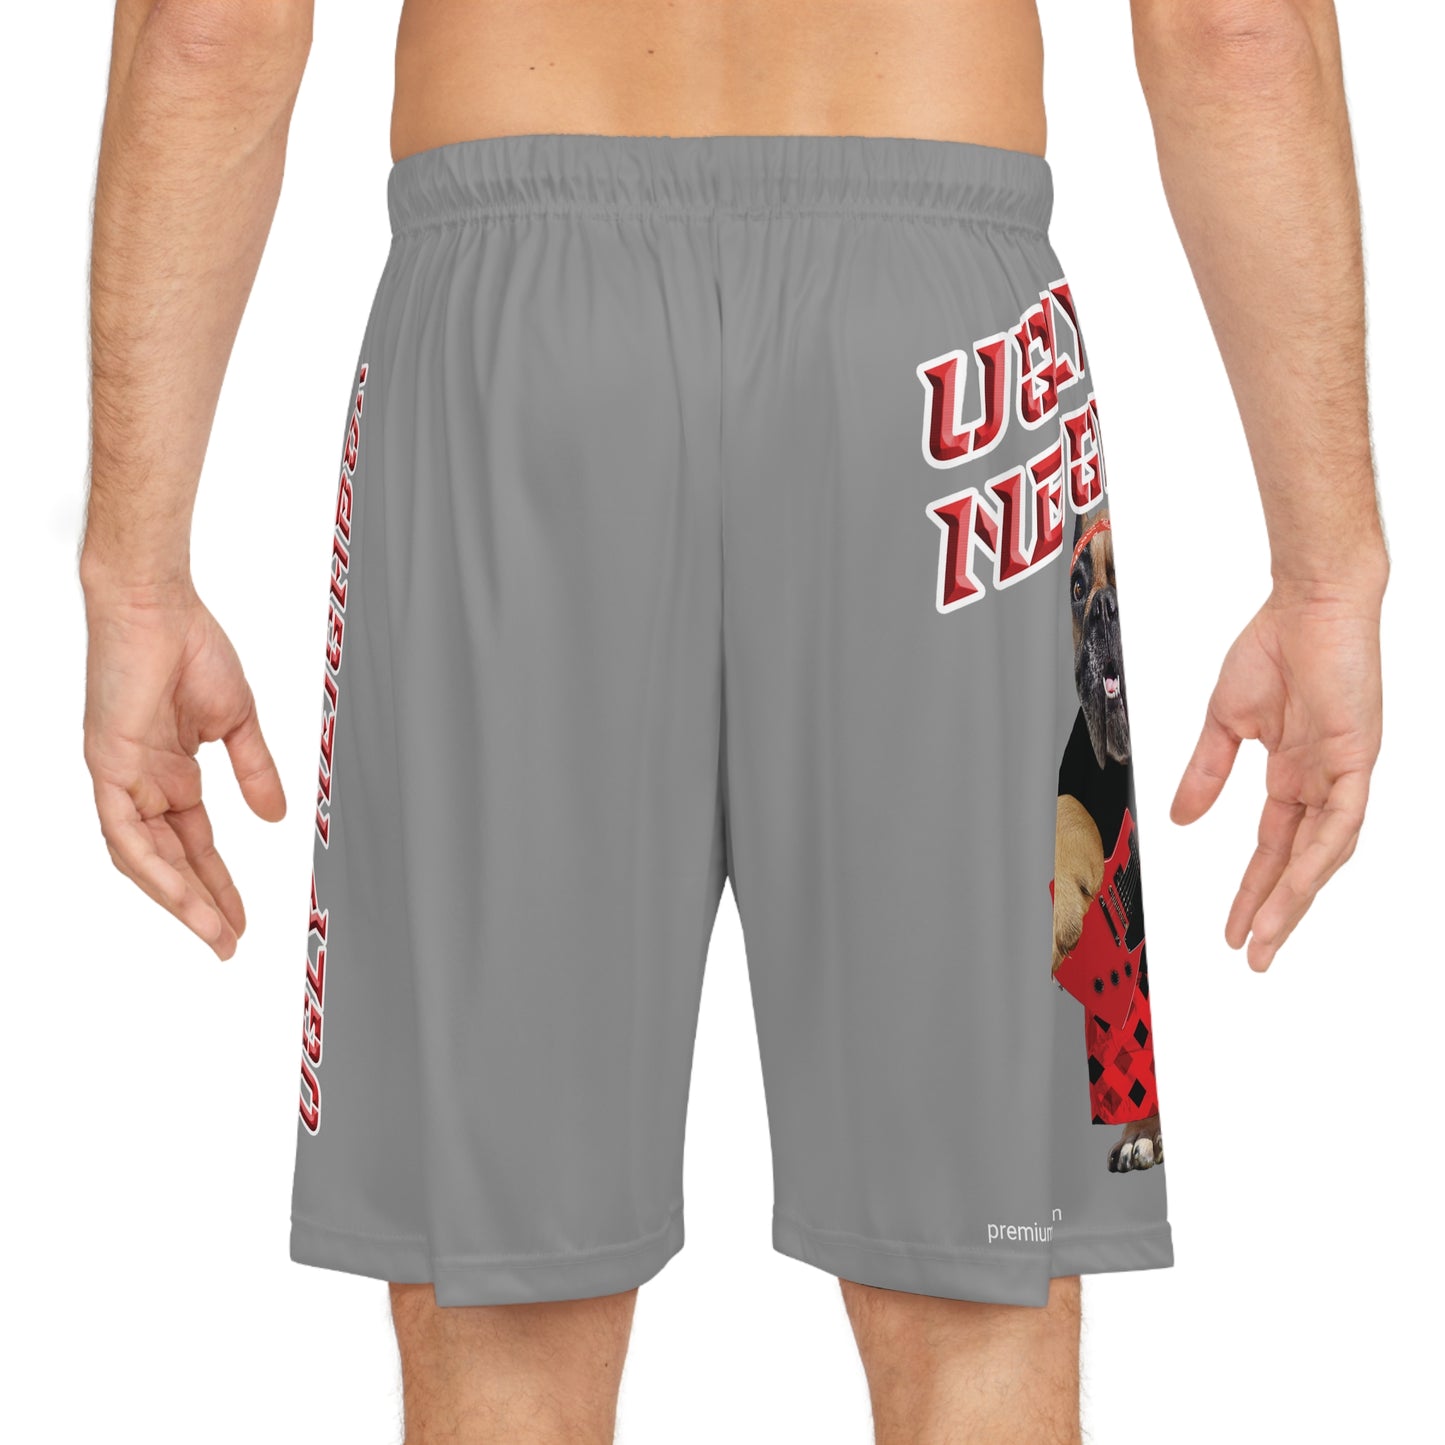 Ugly Neighbor II Basketball Shorts - Grey